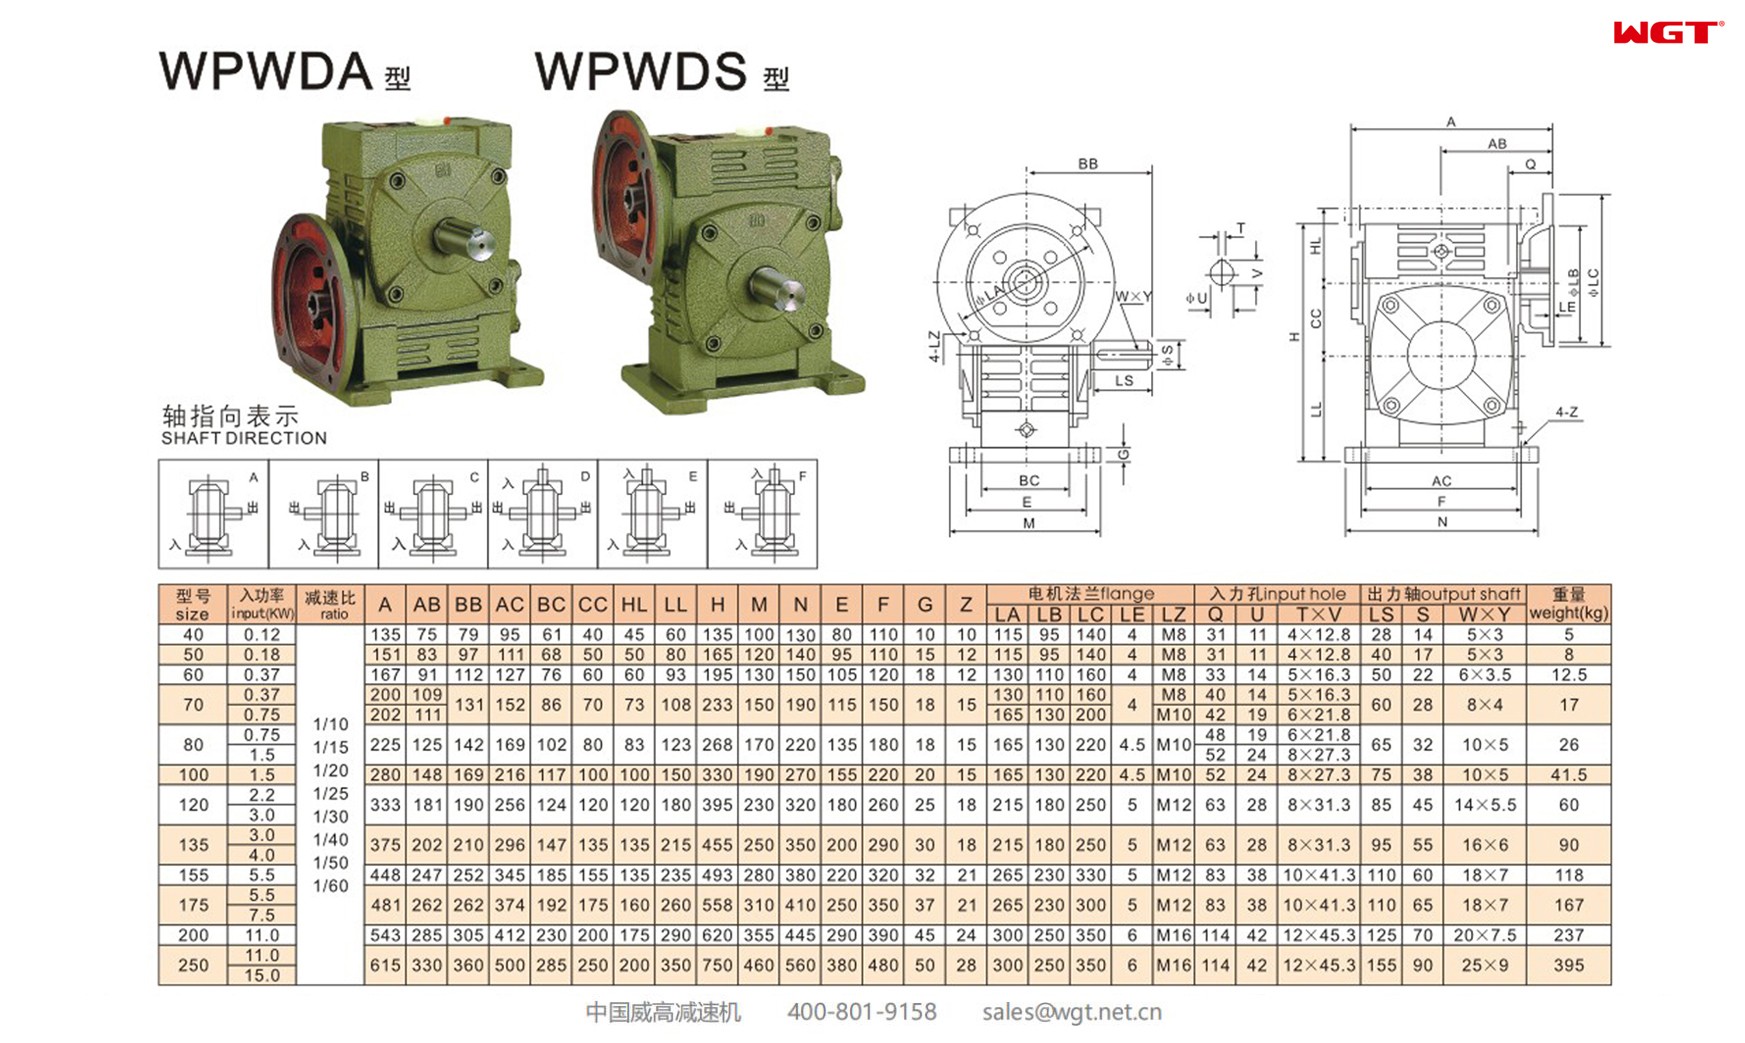 WPWDA40 worm gear reducer universal speed reducer